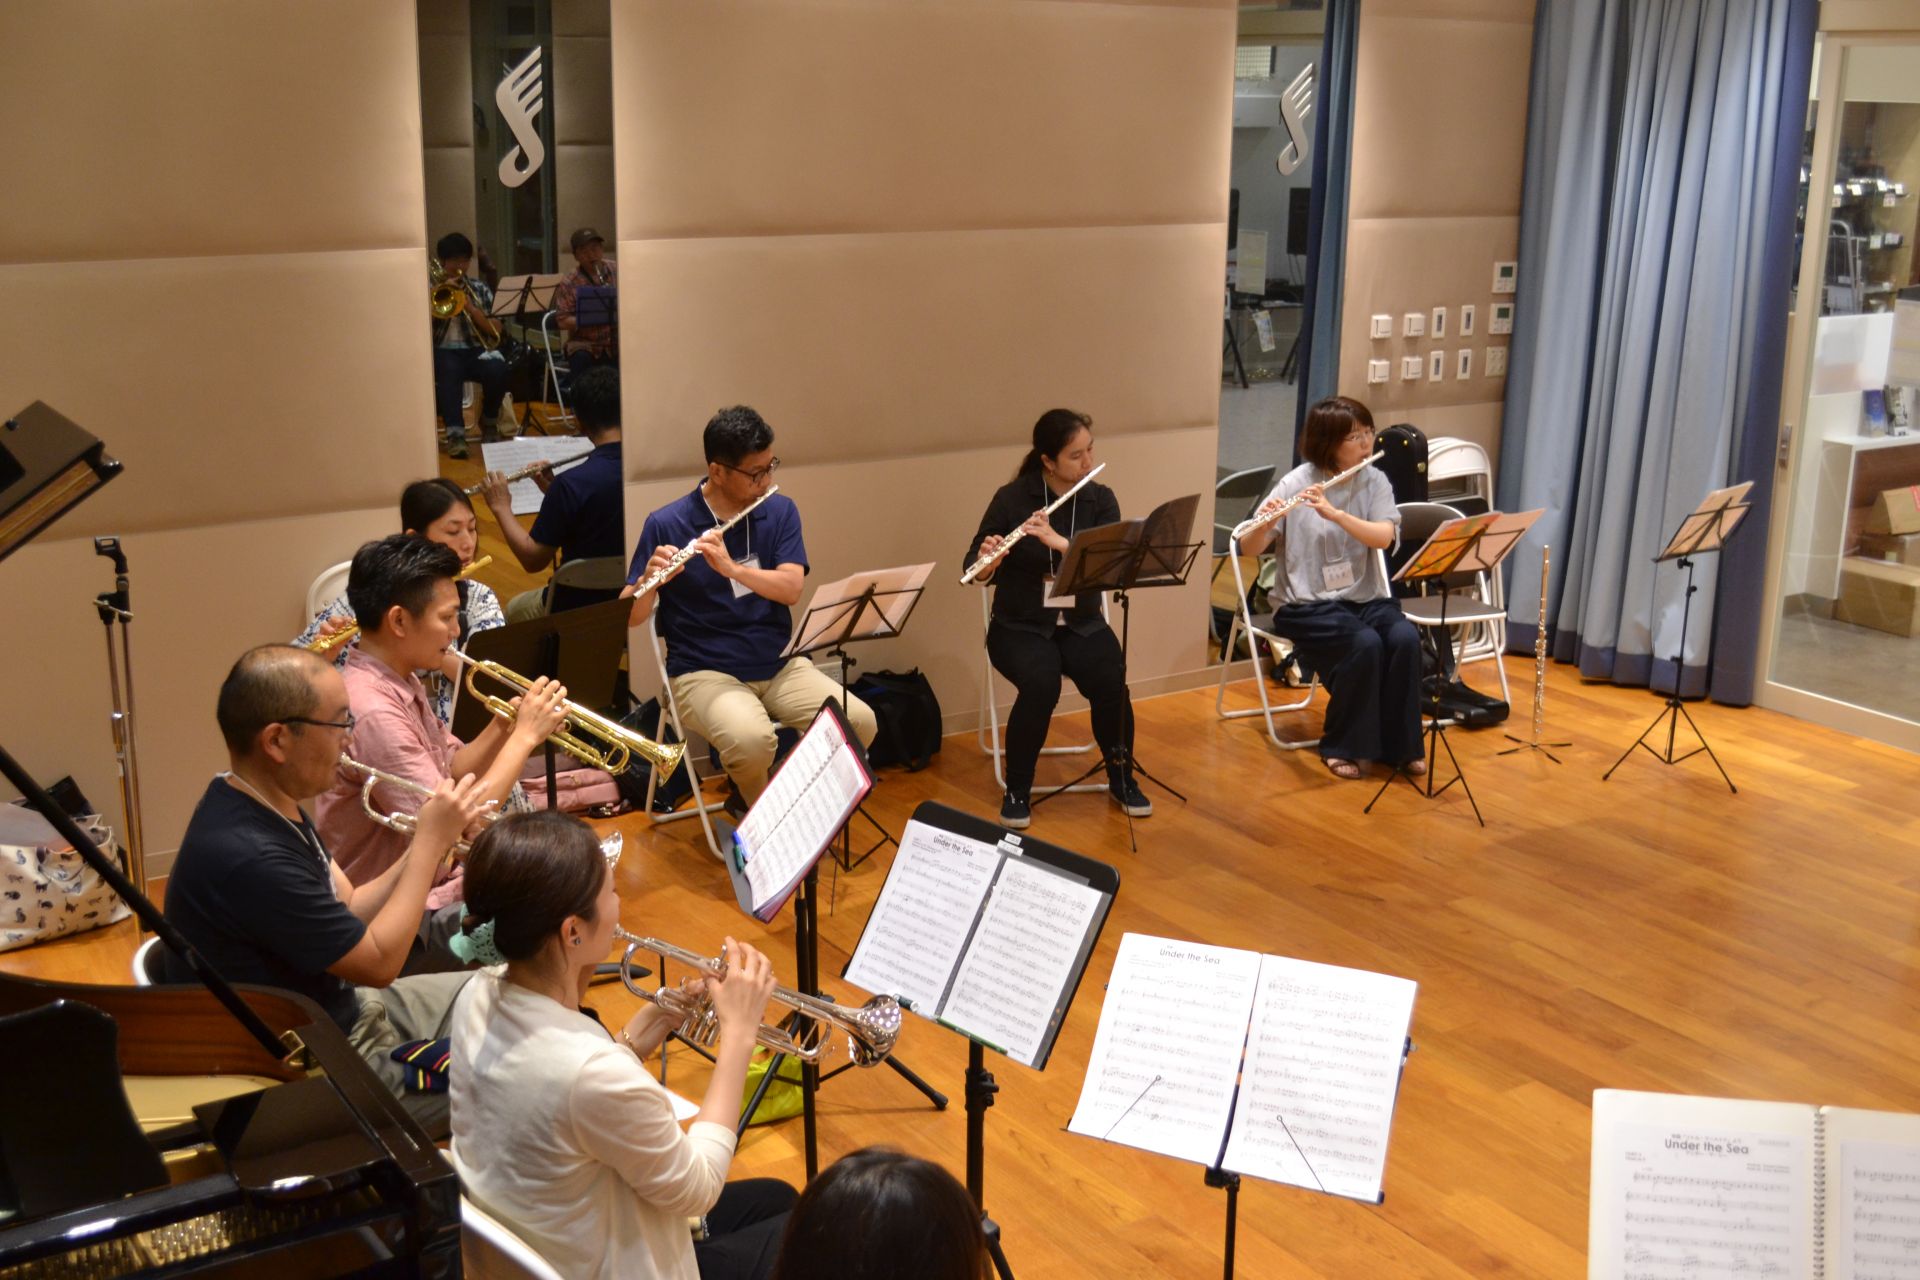 [https://www.shimamura.co.jp/shop/funabashi/instructor/20171122/342::title=] *みなふな管楽器アンサンブルvol.2 開催いたしました！ こんにちは。南船橋店の浅井です。 7月15日に第二回みなふな管楽器アンサンブル開催いた […]